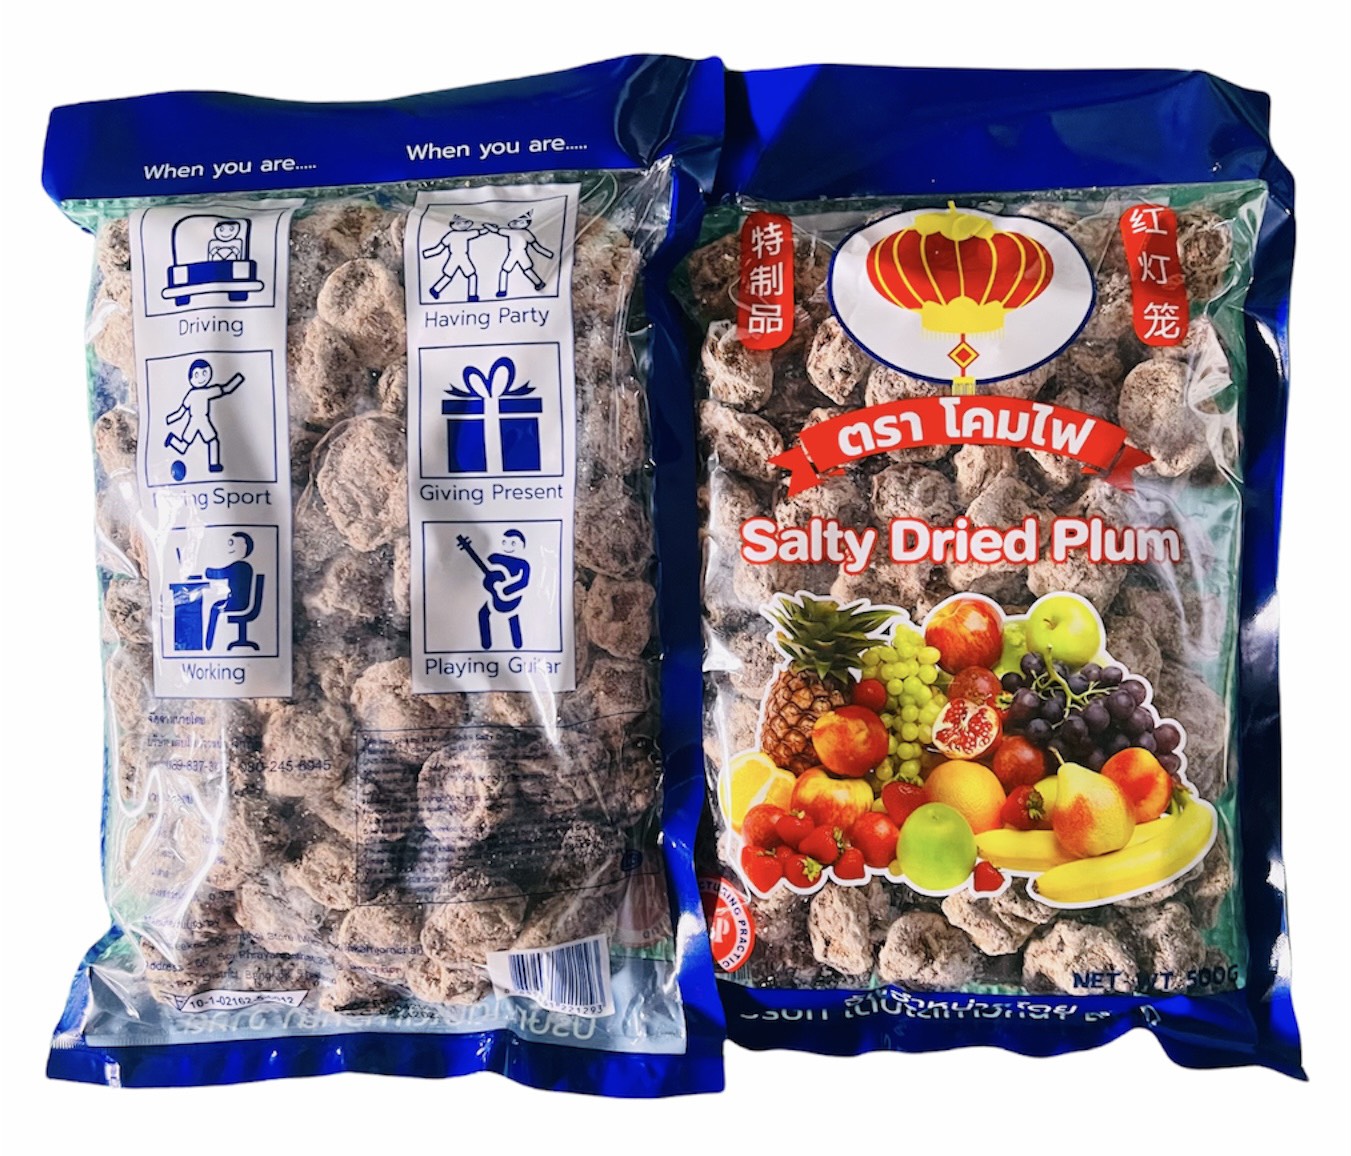 Xí muội khô thái lan salty dried plum 500g (hơn 100viên)